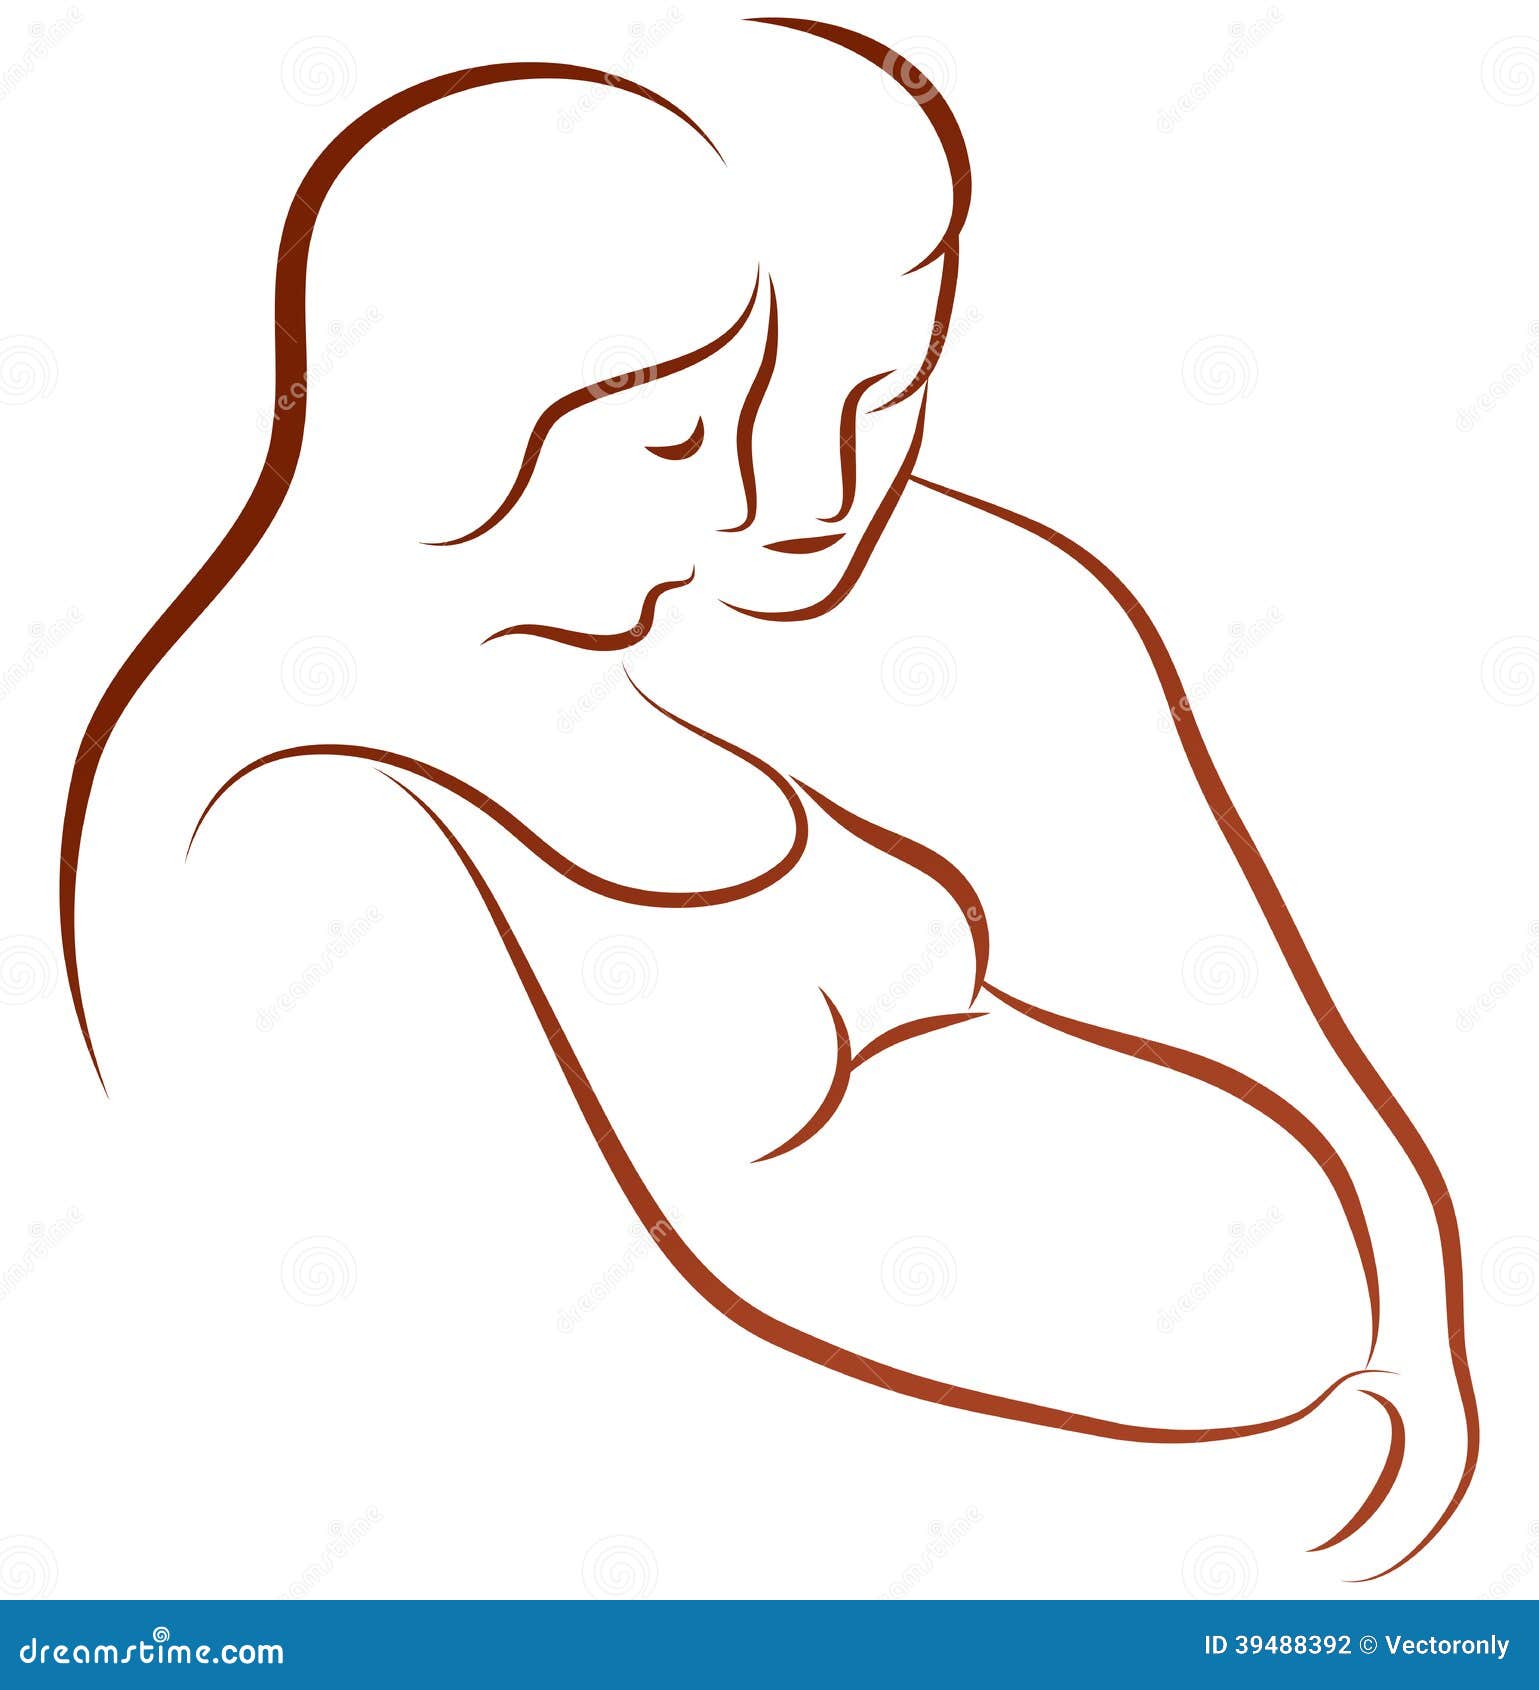 clip art images pregnant lady - photo #47